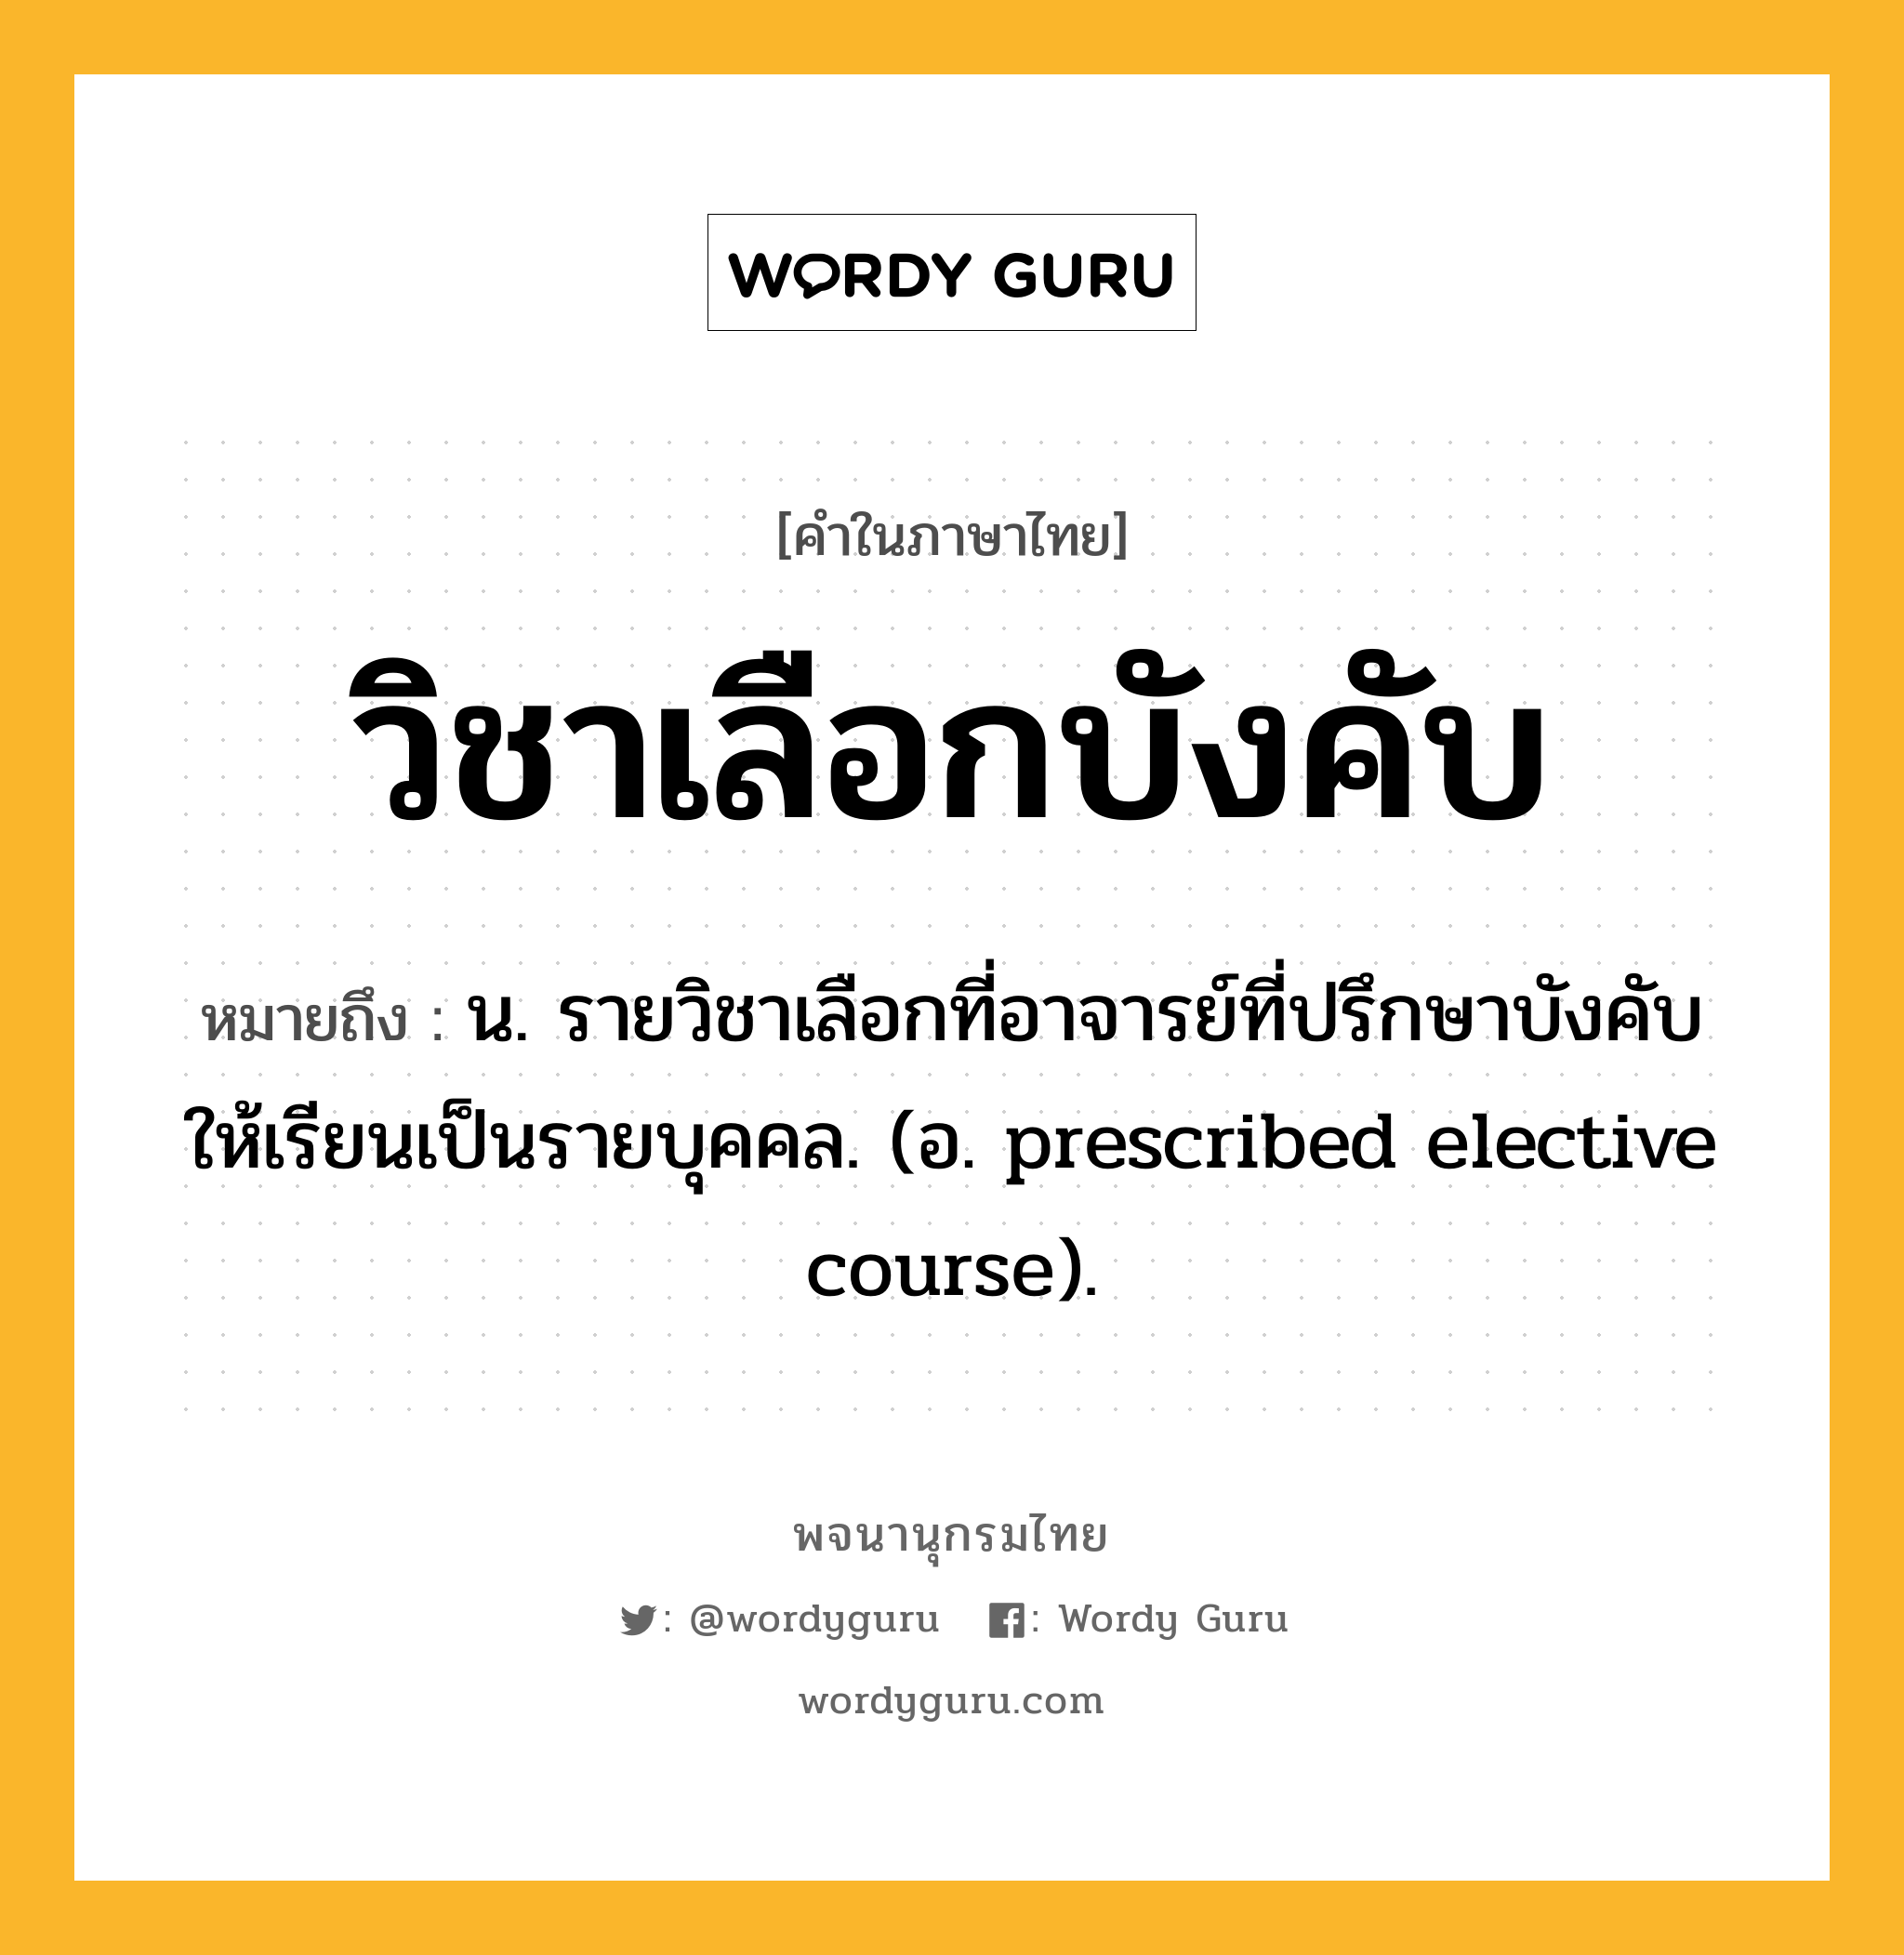 วิชาเลือกบังคับ หมายถึงอะไร?, คำในภาษาไทย วิชาเลือกบังคับ หมายถึง น. รายวิชาเลือกที่อาจารย์ที่ปรึกษาบังคับให้เรียนเป็นรายบุคคล. (อ. prescribed elective course).